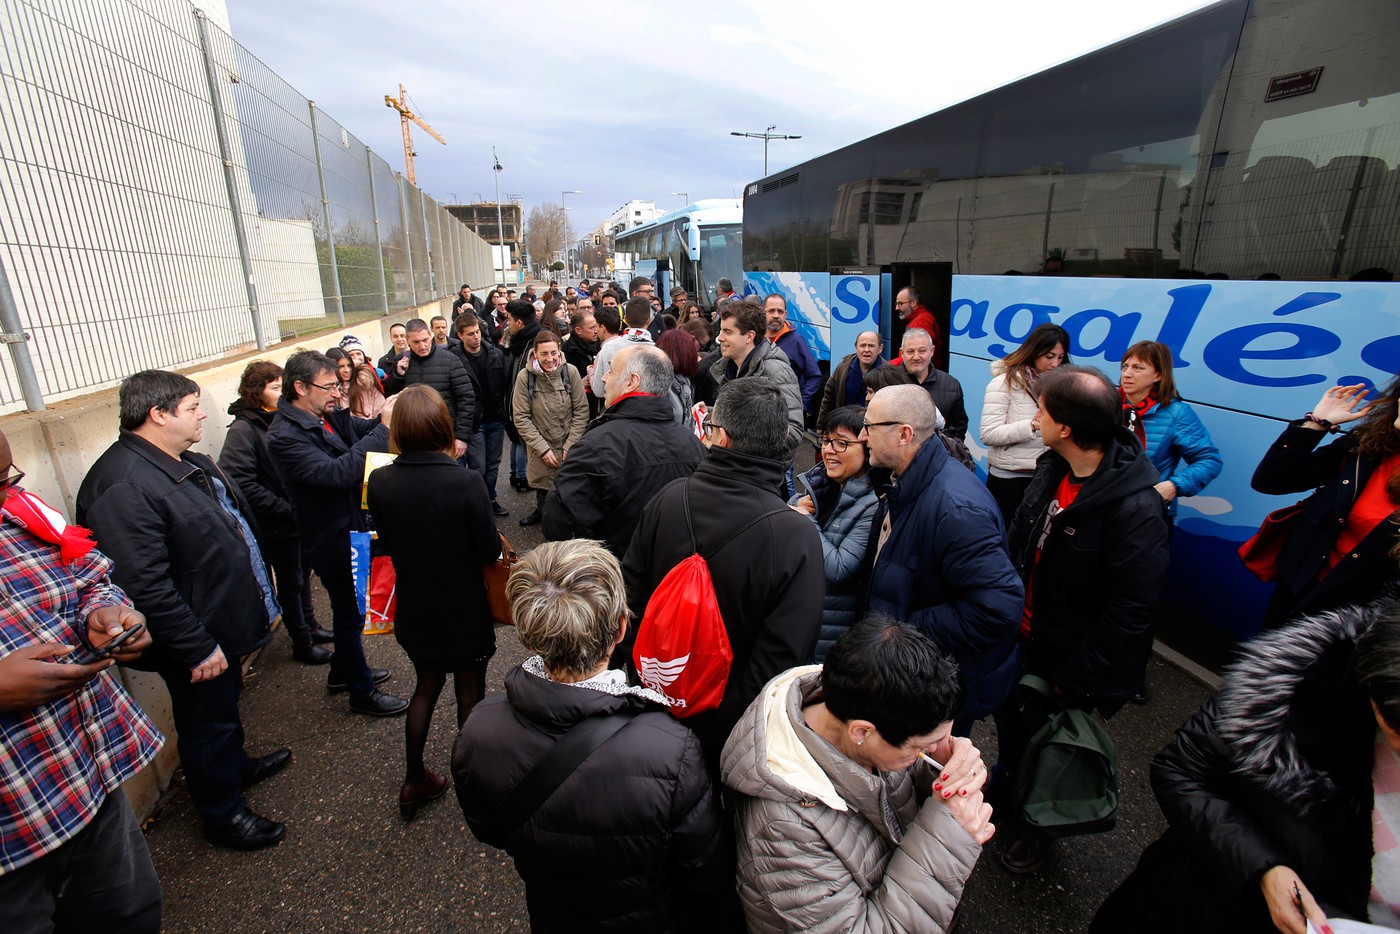 El BAXI Manresa organitza un bus per anar a la Lliga Catalana, a Lleida